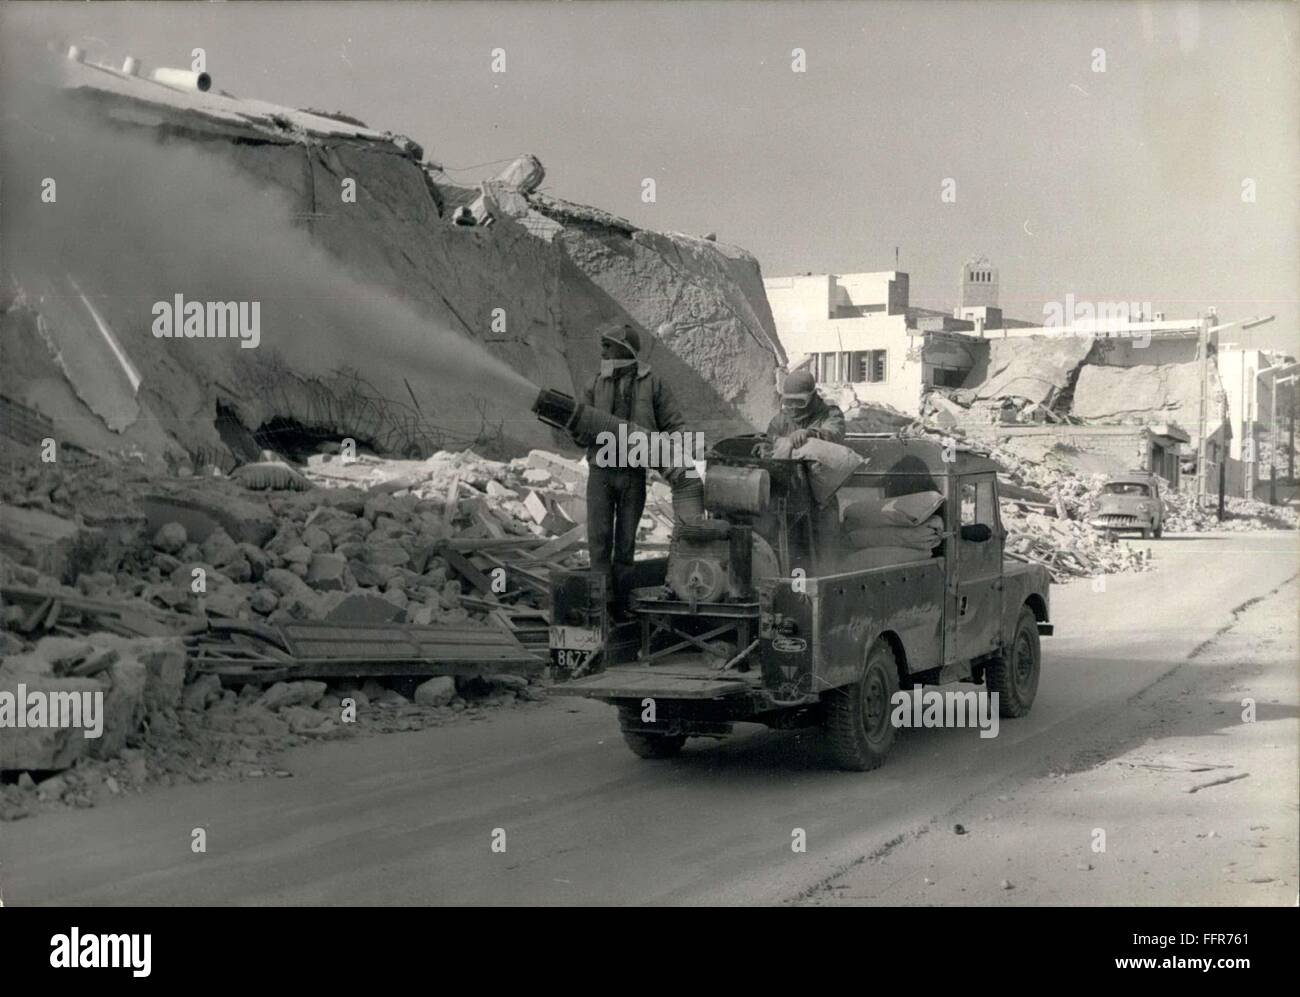 1960 - Terremoto disinfezione lavora ad Agadir: D.T.T. e anti tifo polvere/irroratori in azione per le strade di Agadir, il marocchino città distrutta dal recente terremoto. © Keystone Pictures USA/ZUMAPRESS.com/Alamy Live News Foto Stock